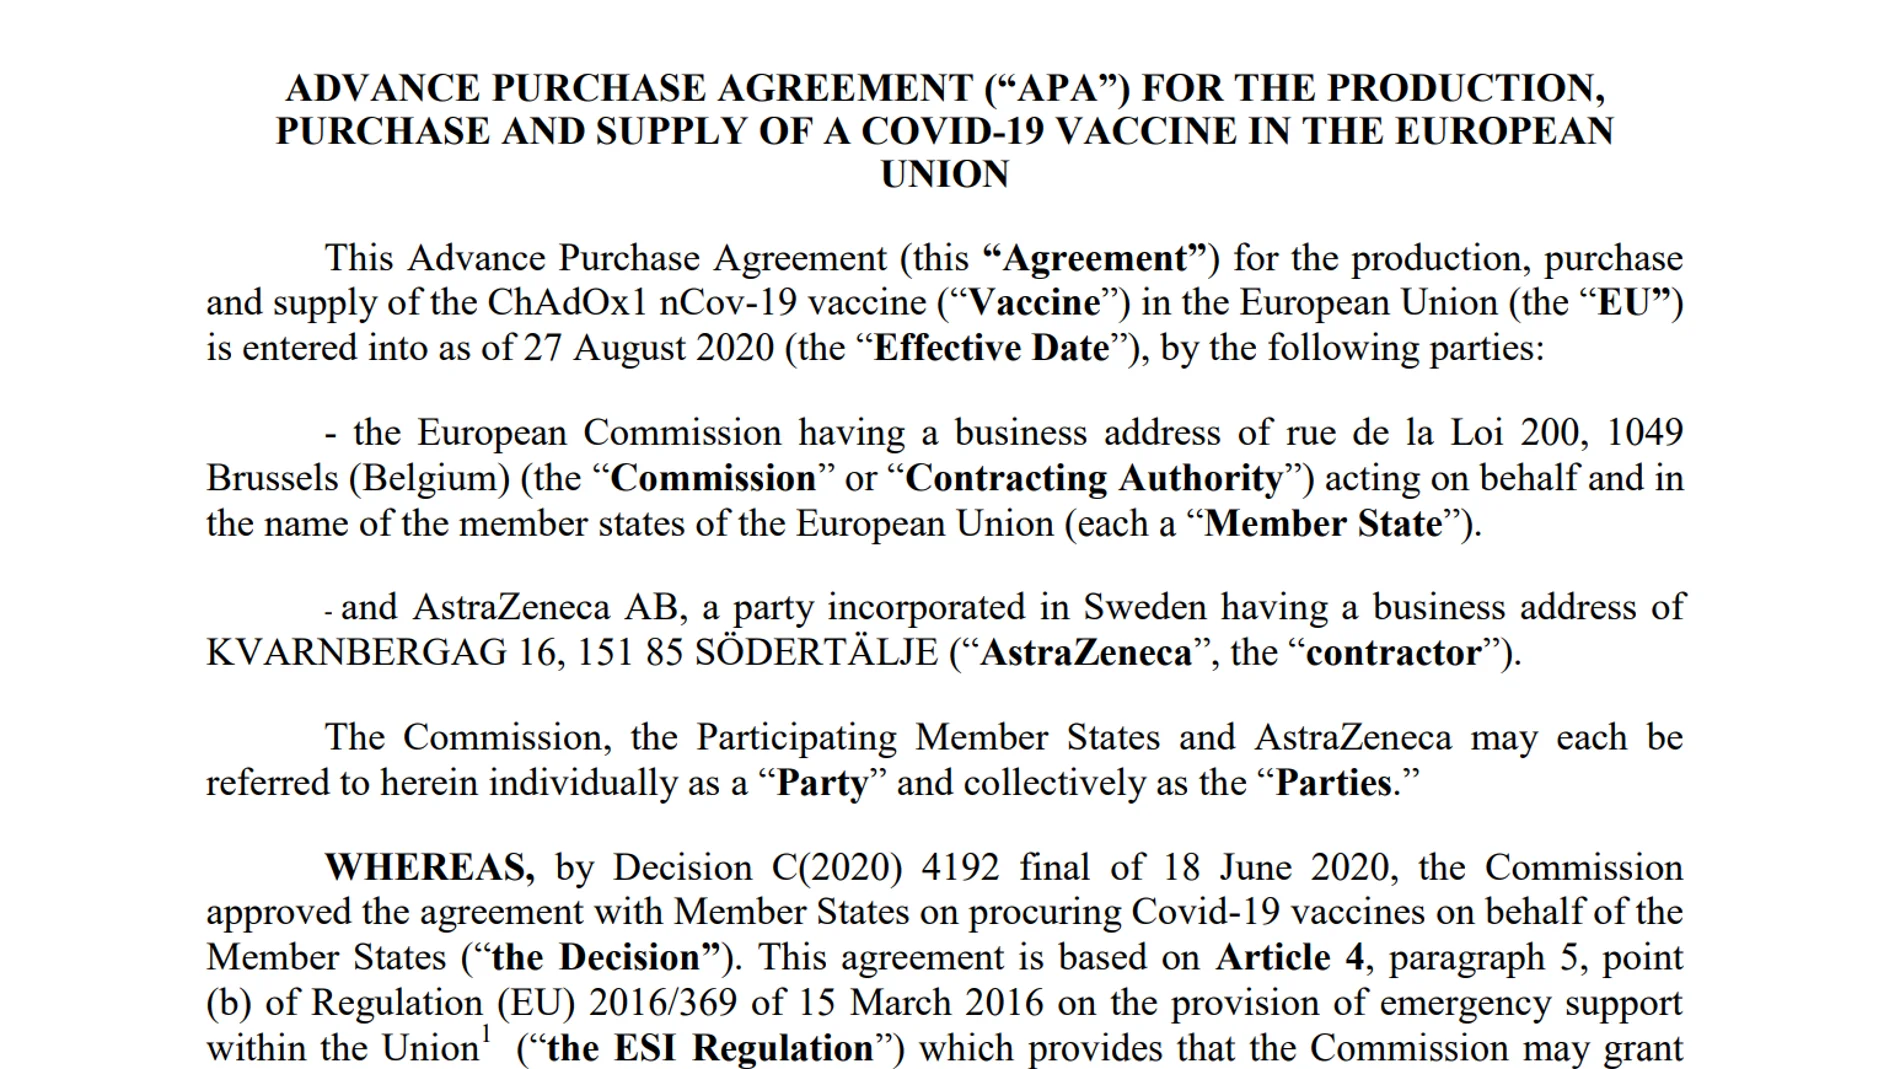 Captura del contrato firmado entre AstraZeneca y la Comisión Europea